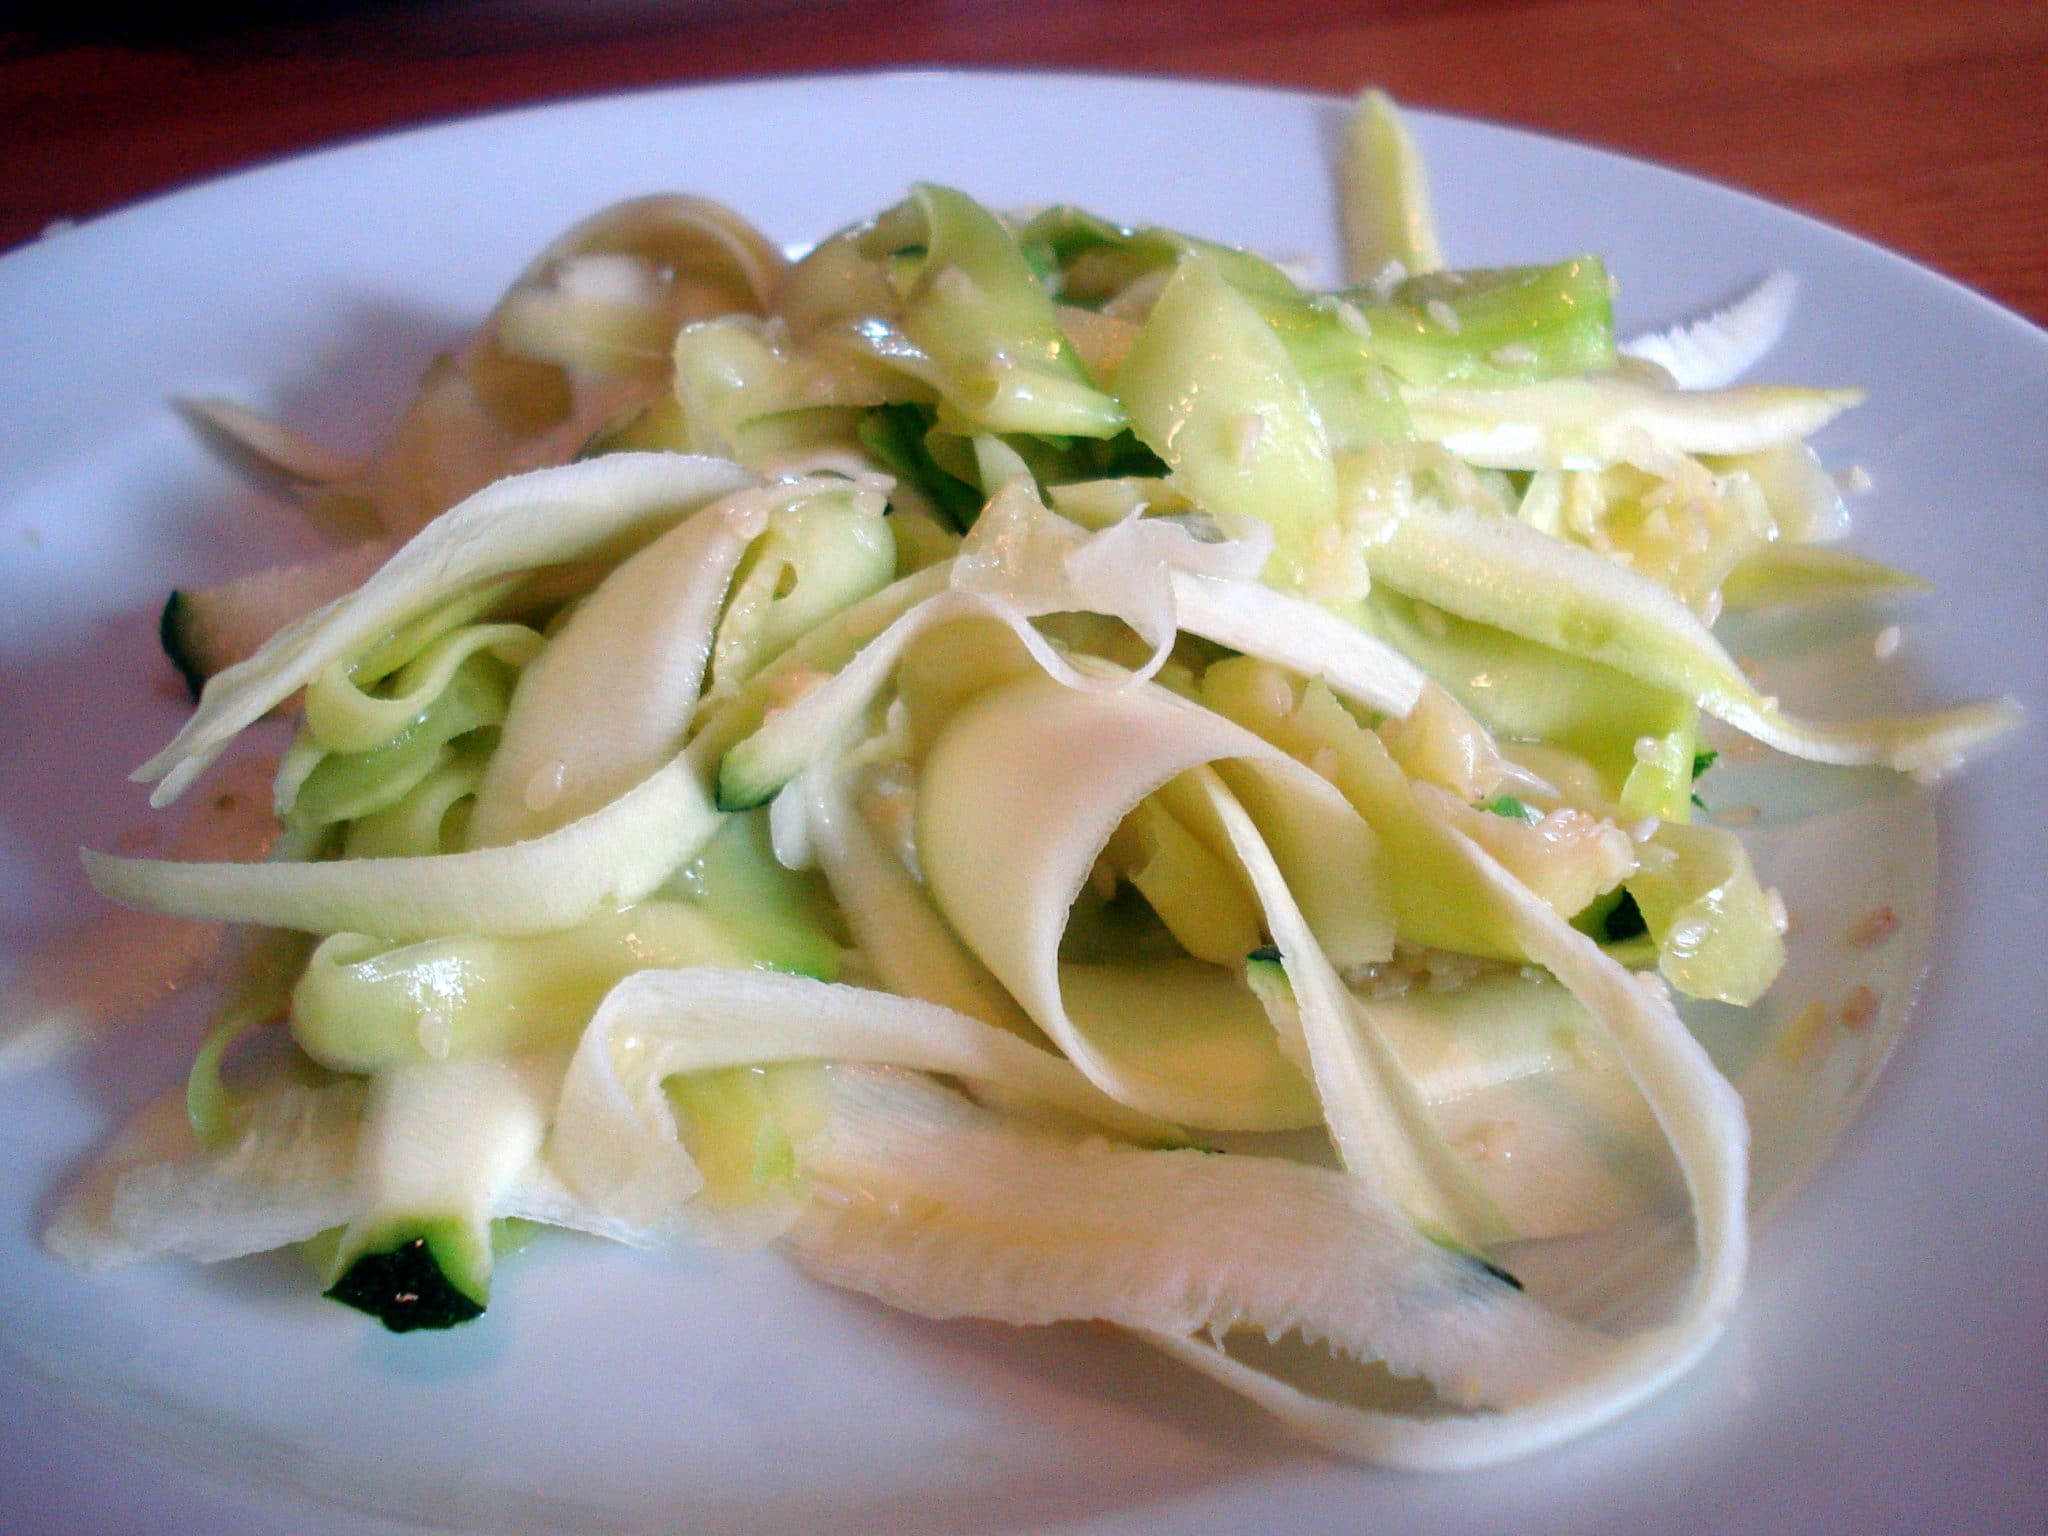 Raw zucchini pasta